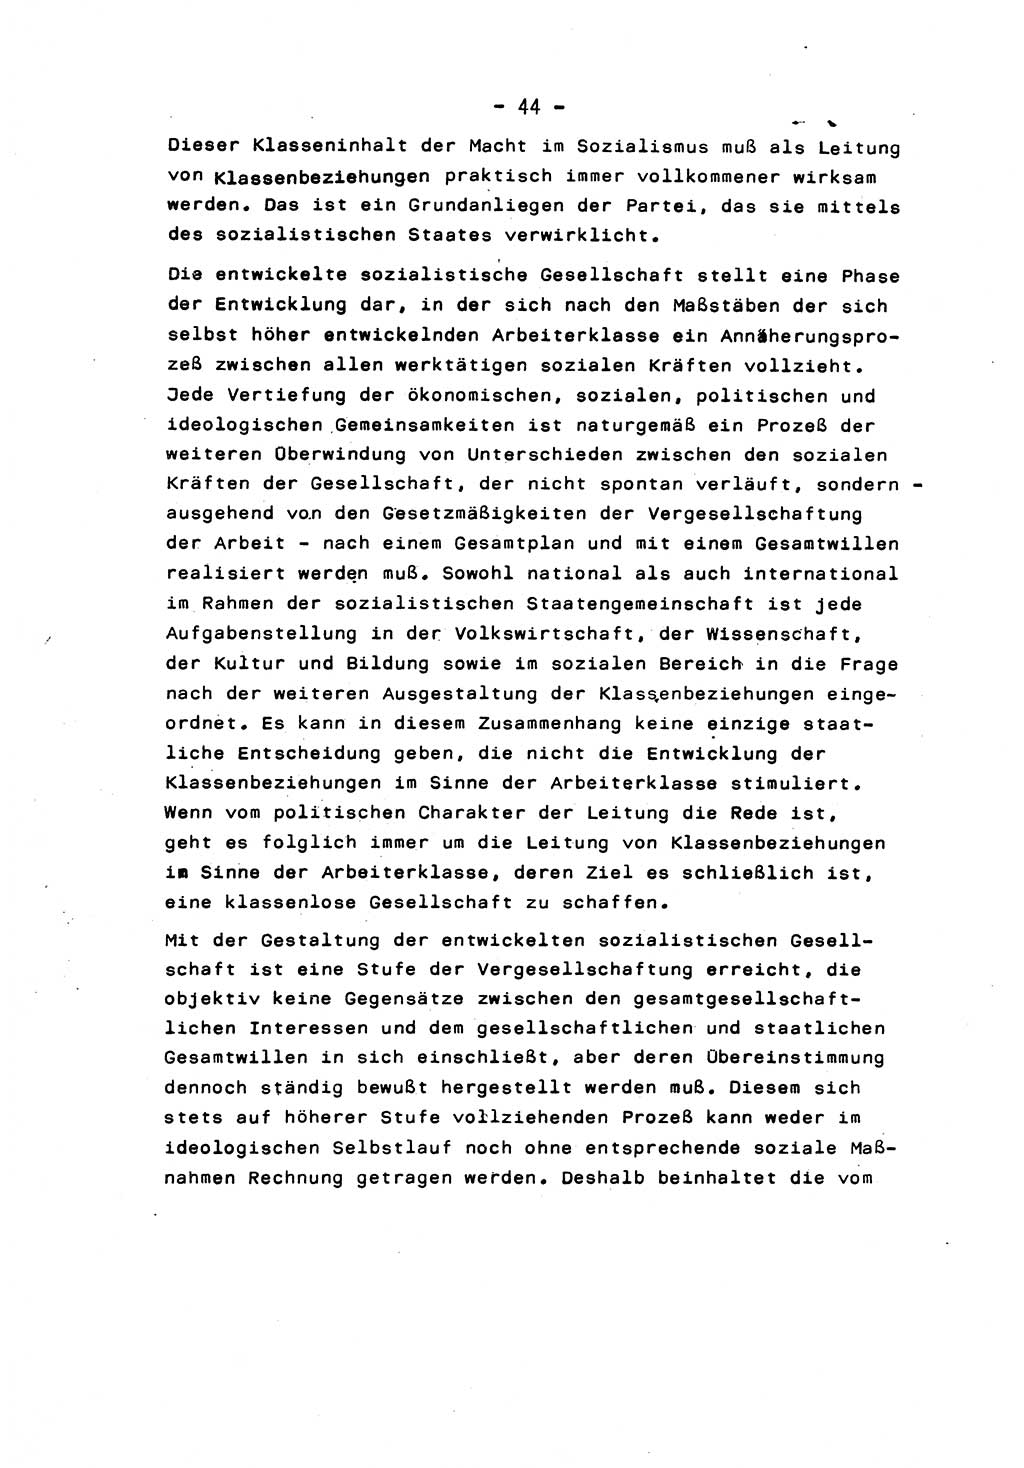 Marxistisch-leninistische Staats- und Rechtstheorie [Deutsche Demokratische Republik (DDR)] 1975, Seite 44 (ML St.-R.-Th. DDR 1975, S. 44)